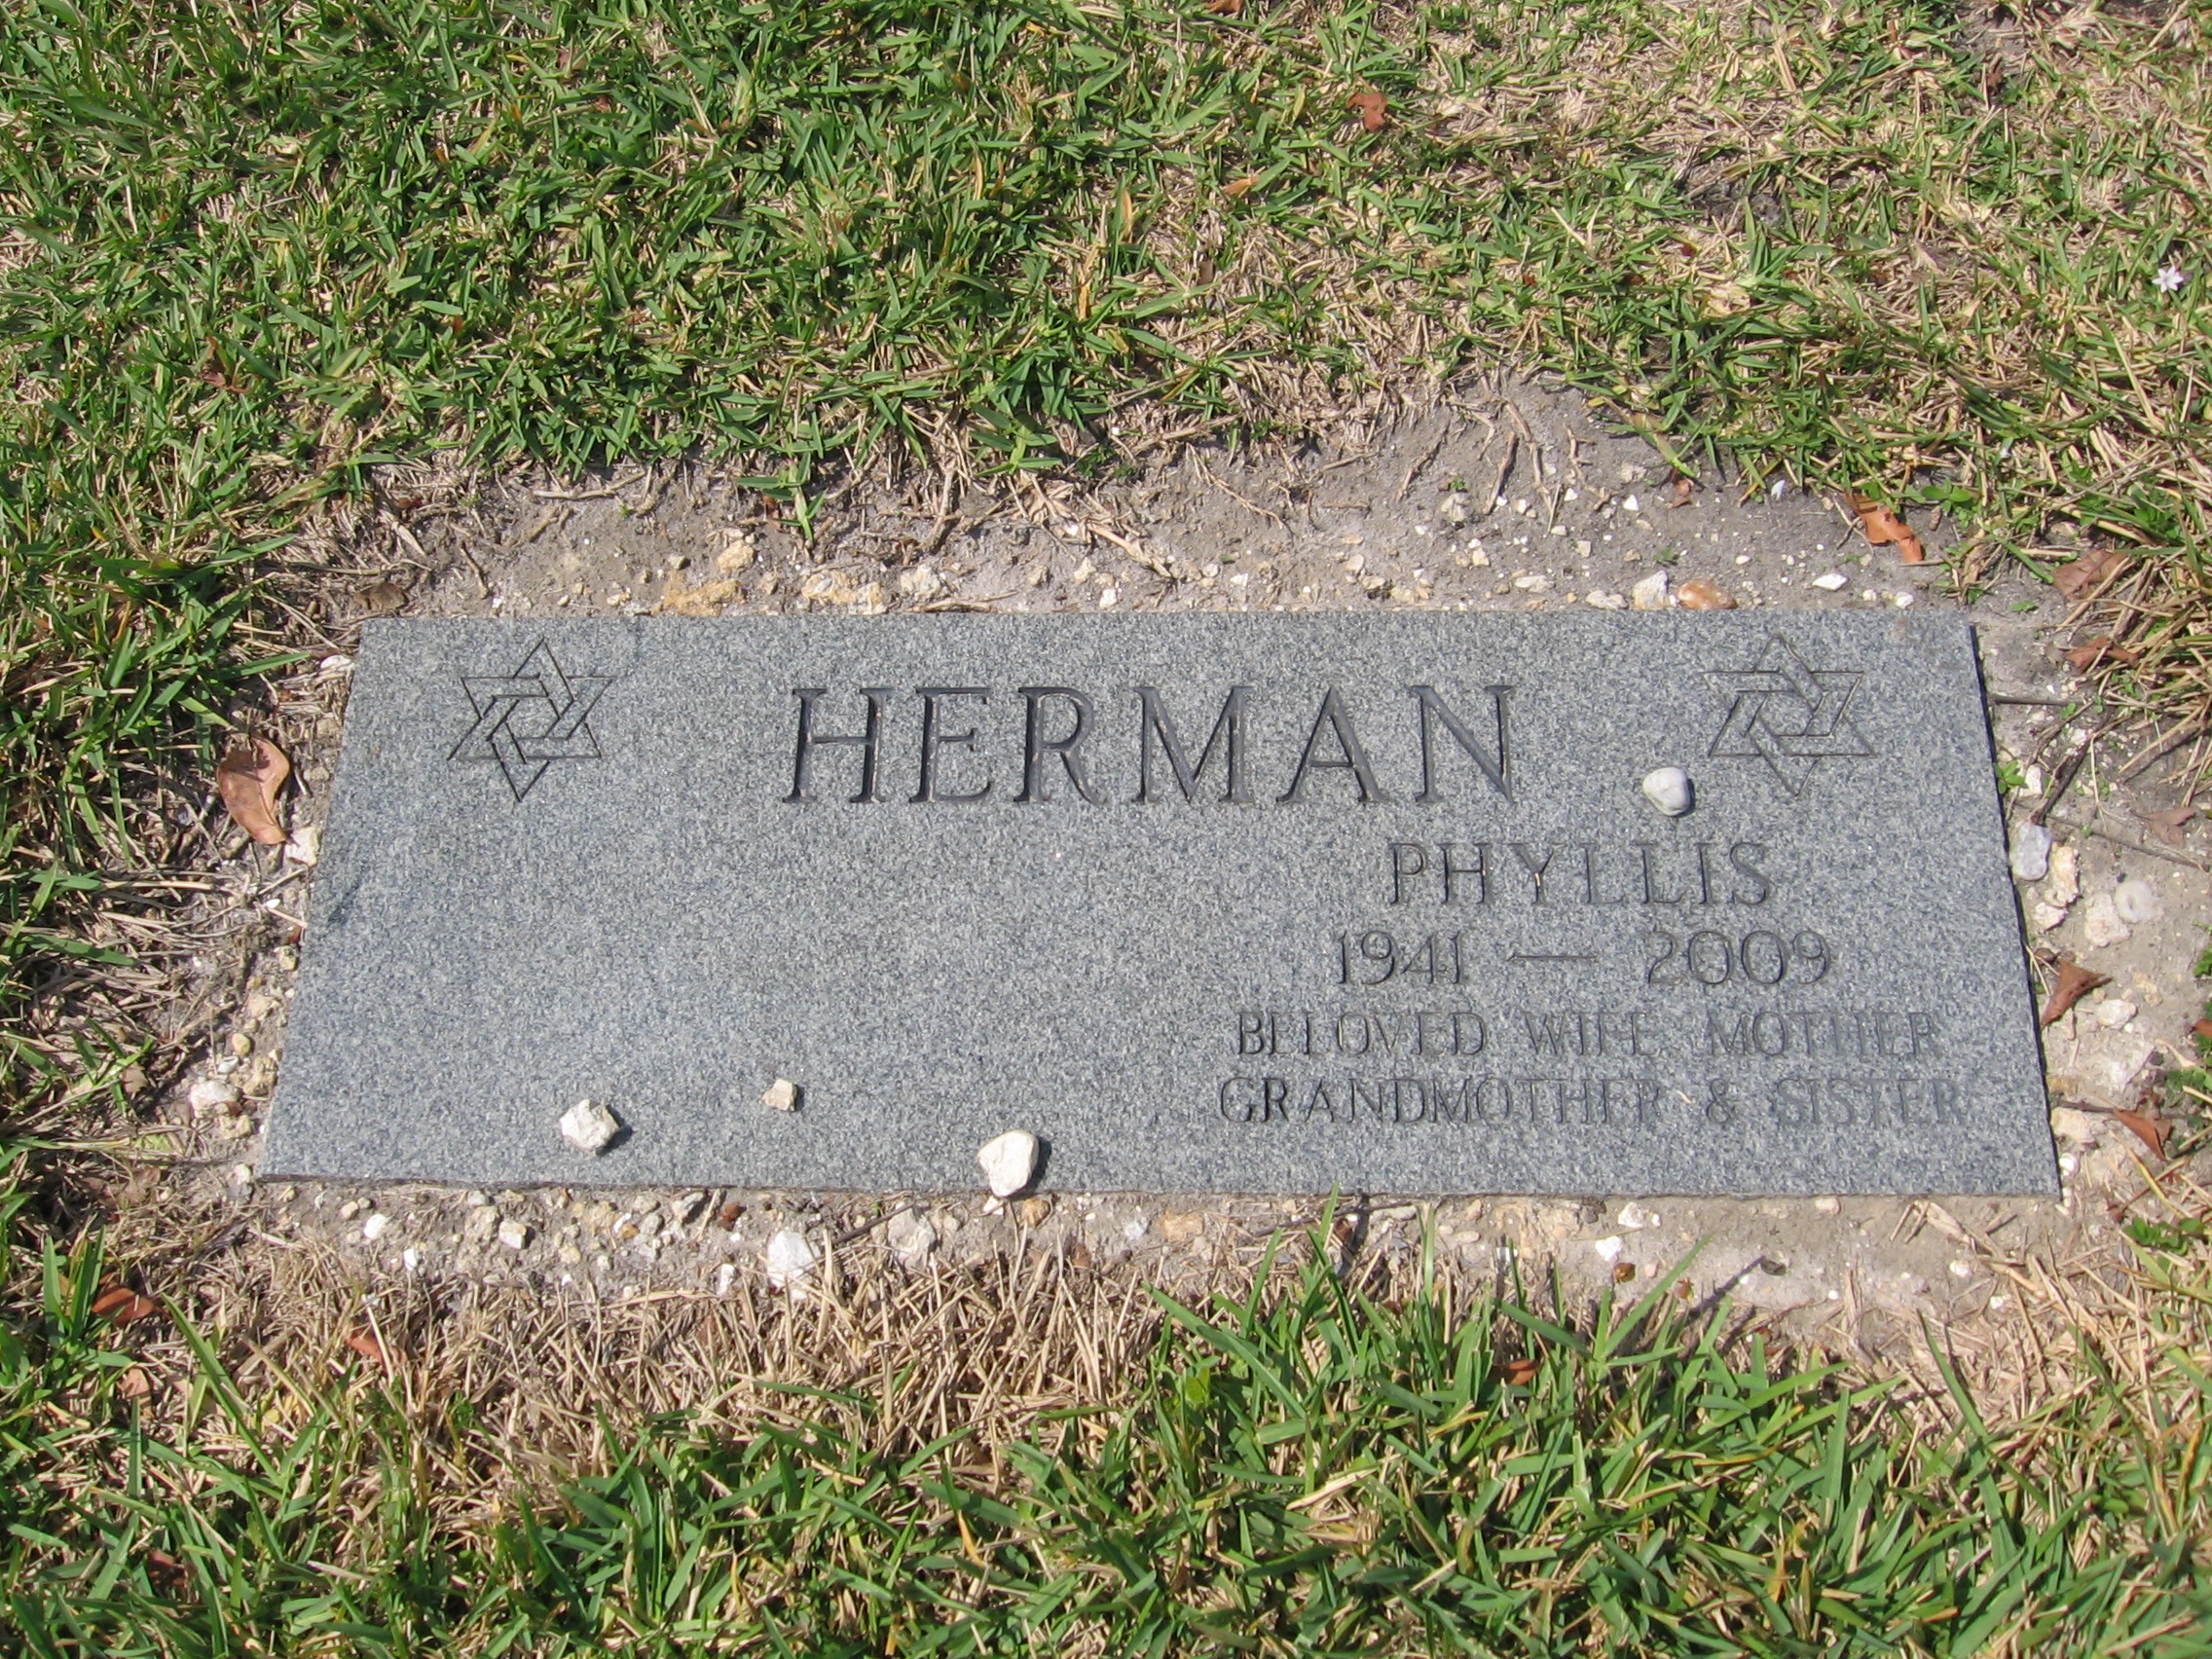 Phyllis Herman